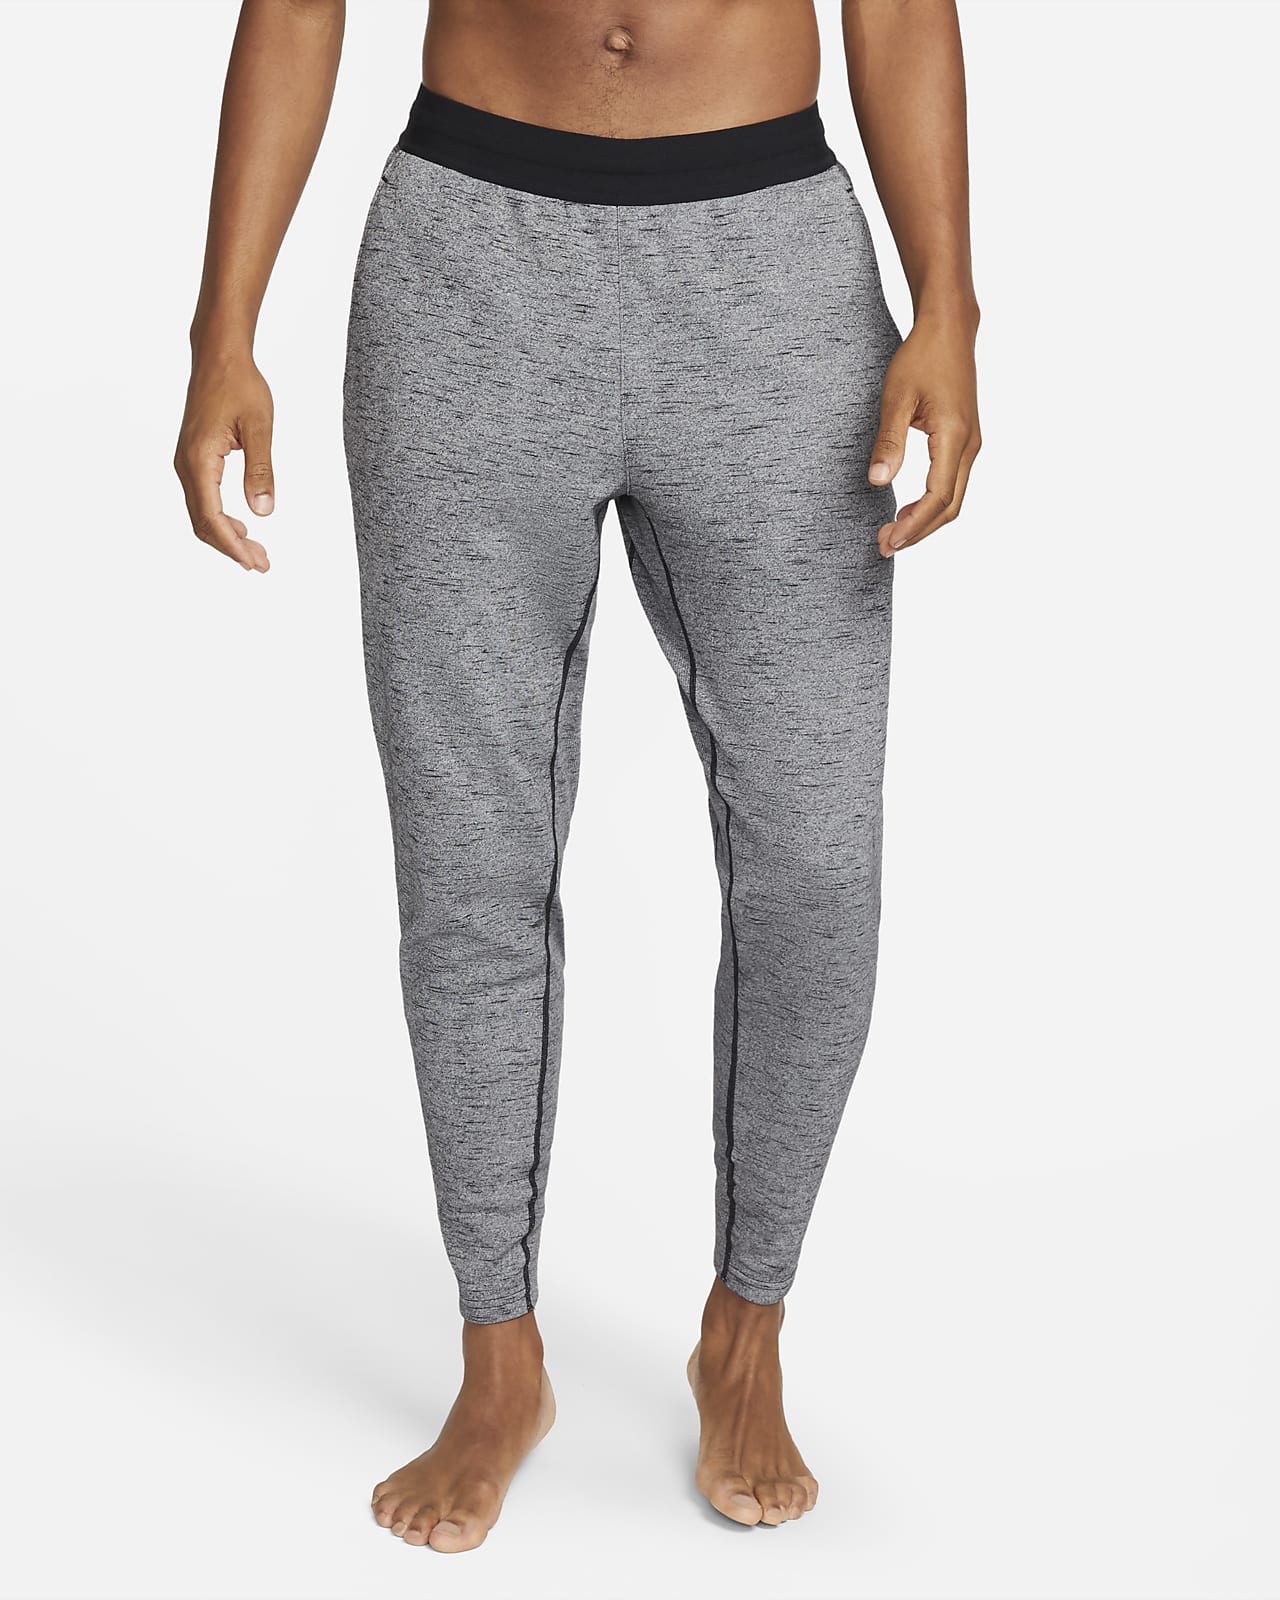 Satisfacer Anzai liberal Nike Yoga Dri-FIT Pantalón teñido - Hombre. Nike ES